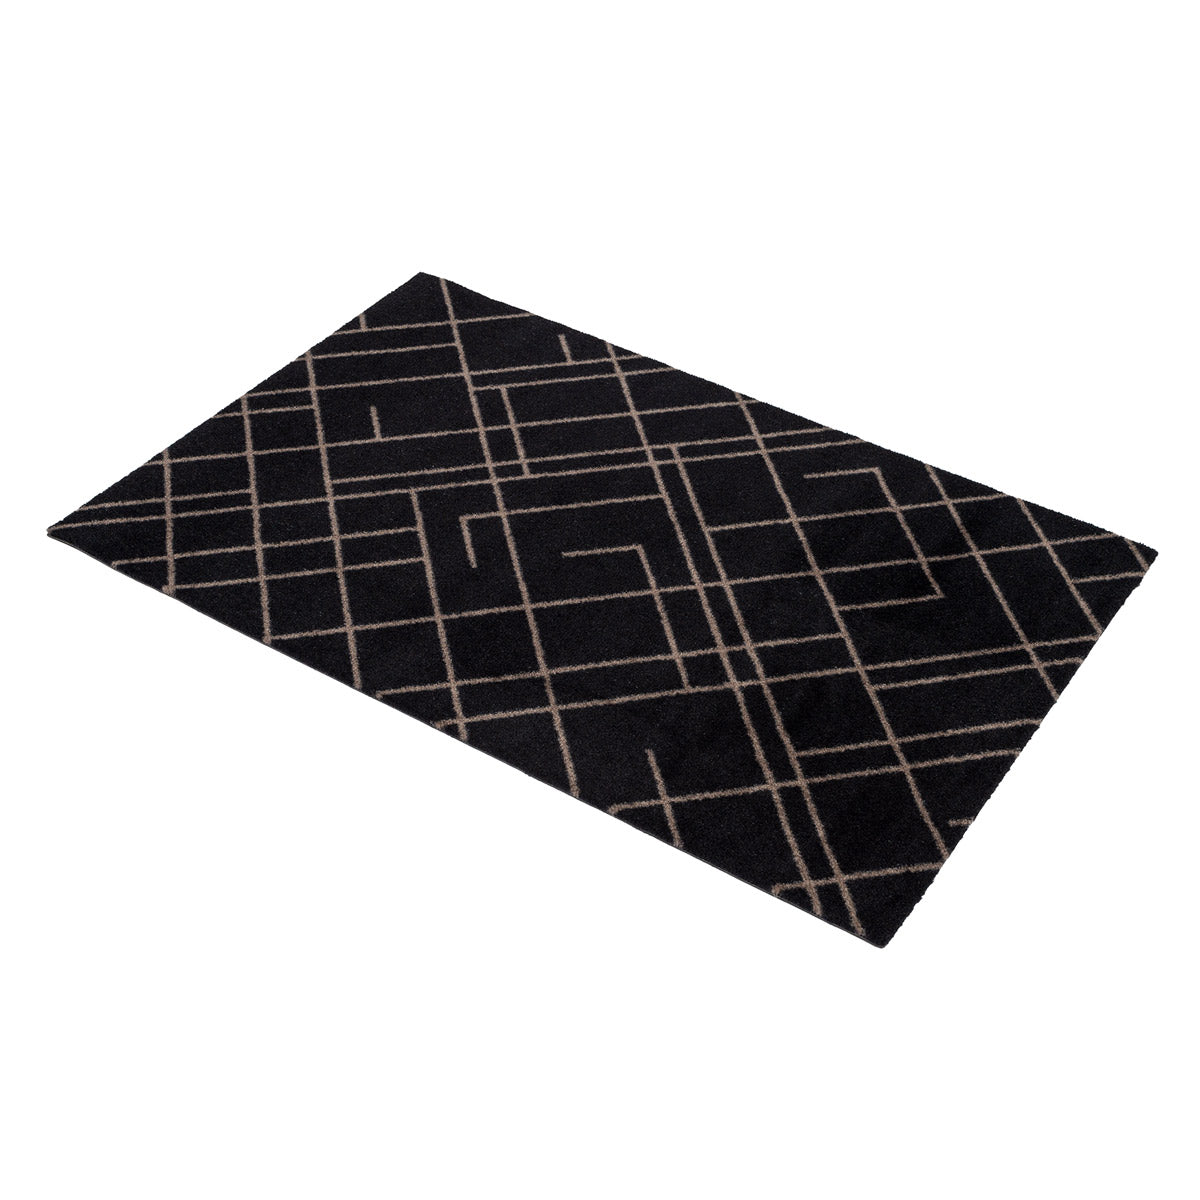 Tapete de piso 60 x 90 cm - linhas/areia preta